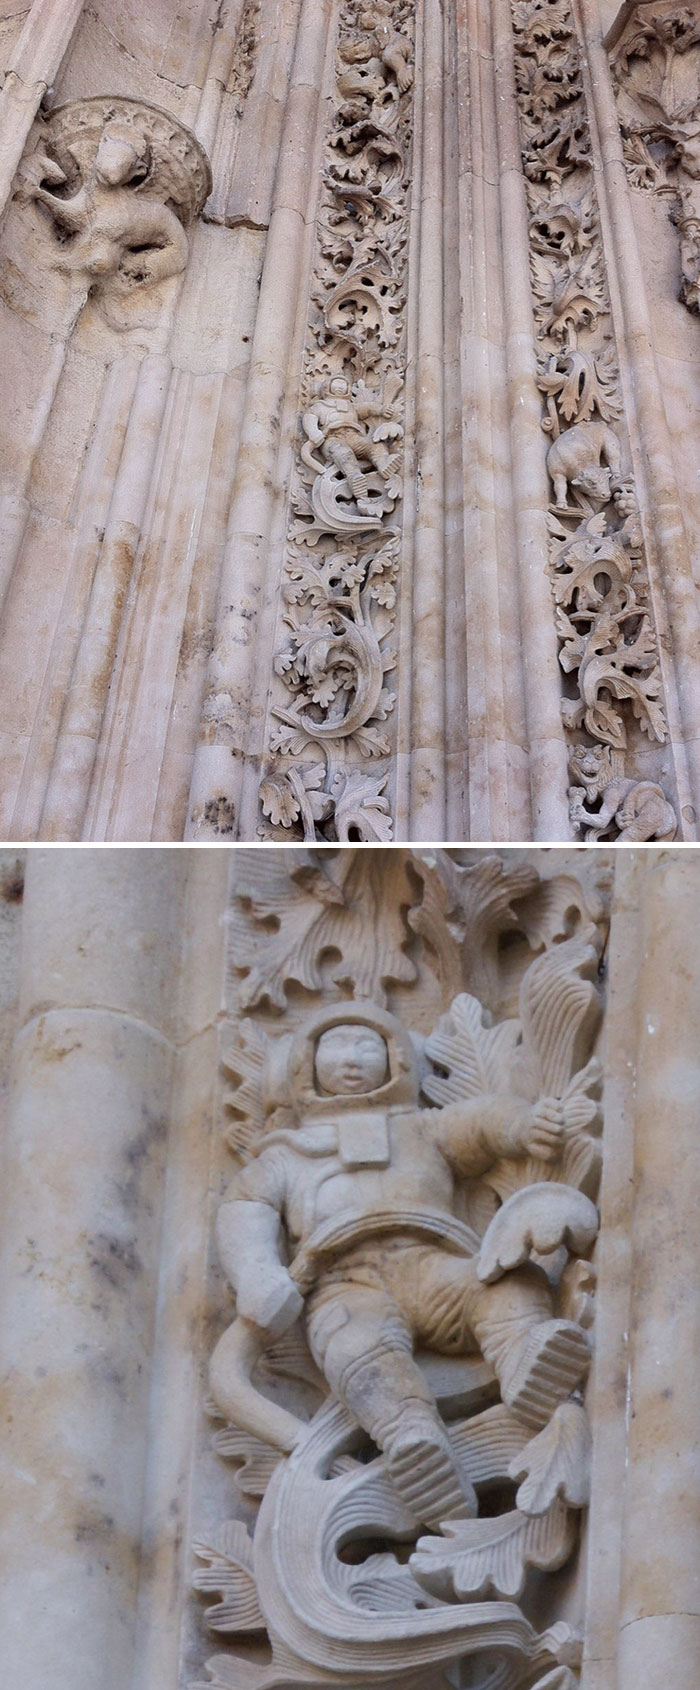 Encontramos un astronauta tallado en la entrada de esta iglesia de 900 años en Salamanca, España